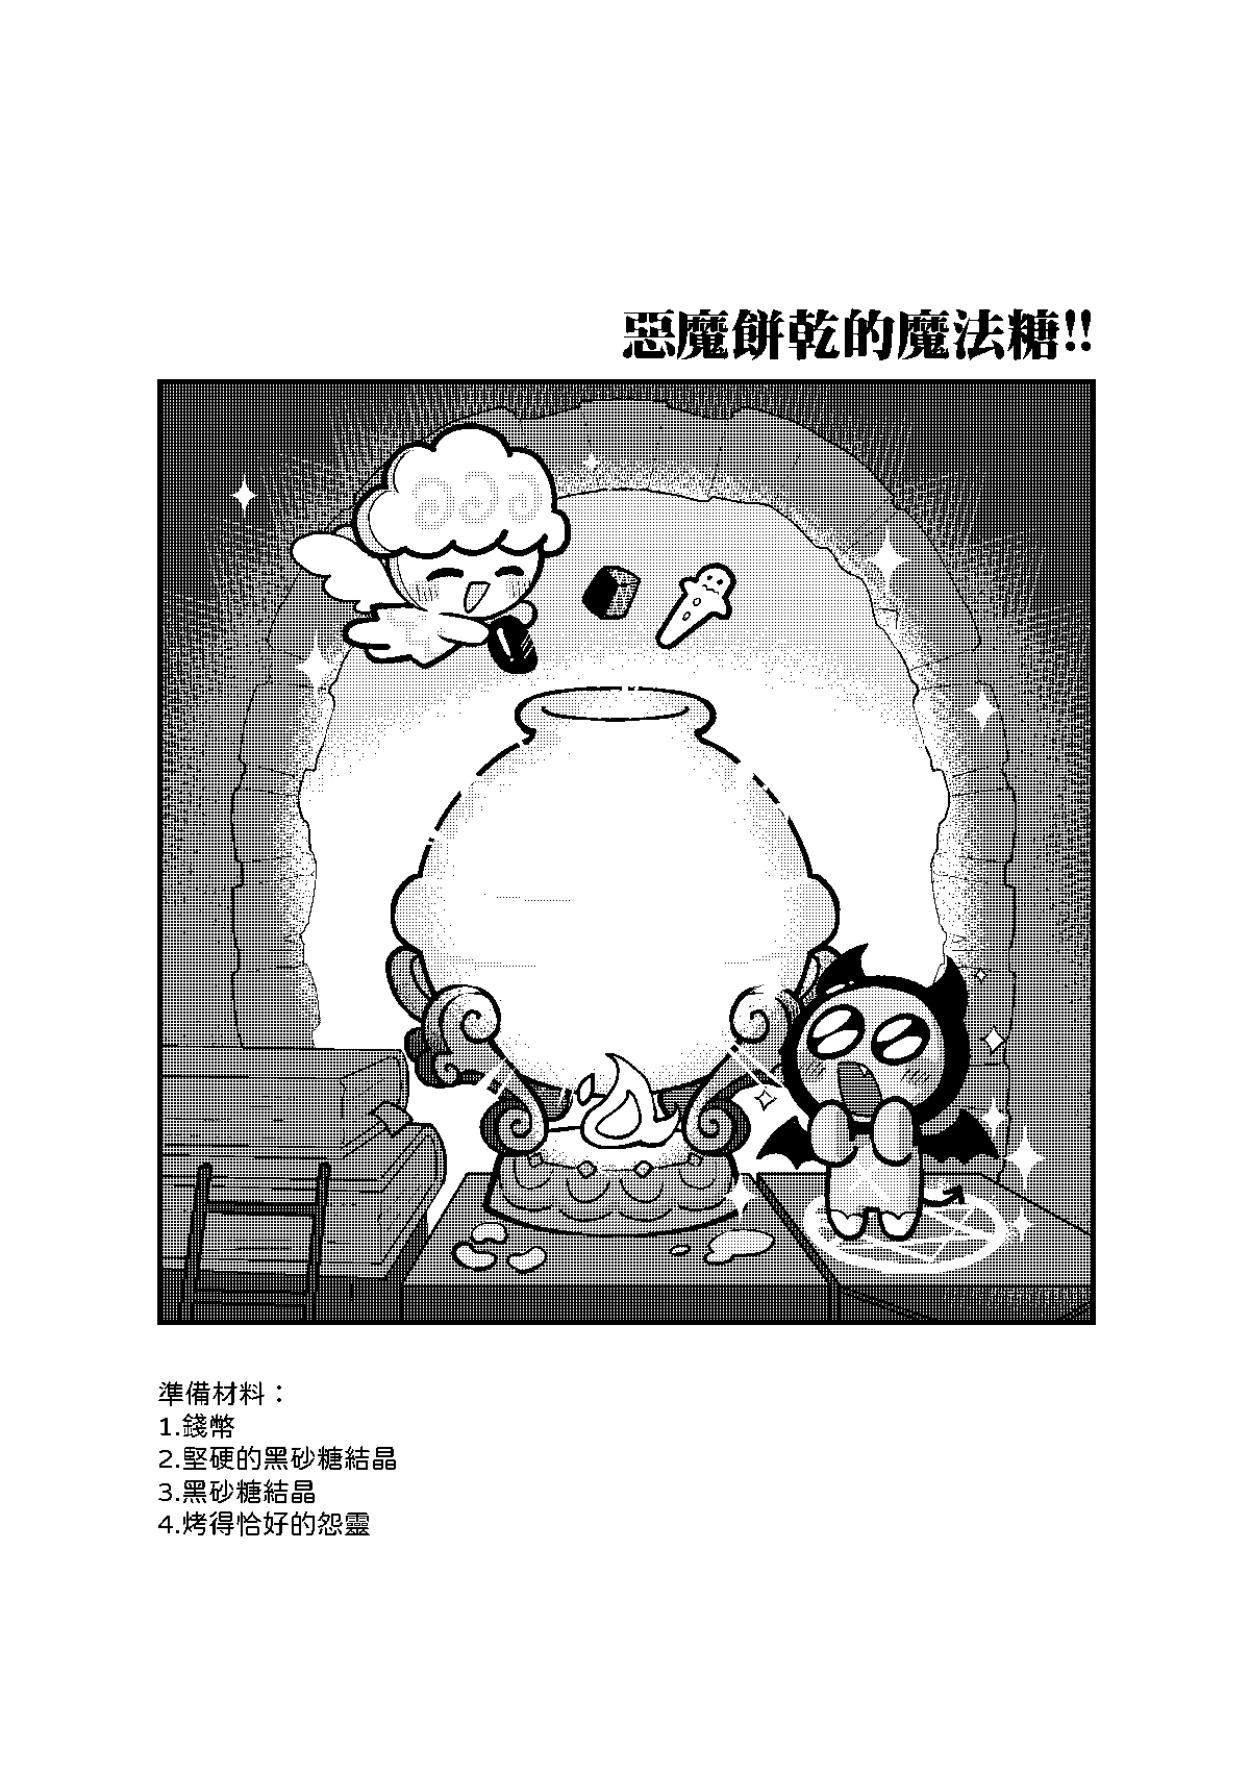 Yī qǐlái zuò tángshuāng bǐnggān ba 2 | "Let's make icing cookies 2" 3